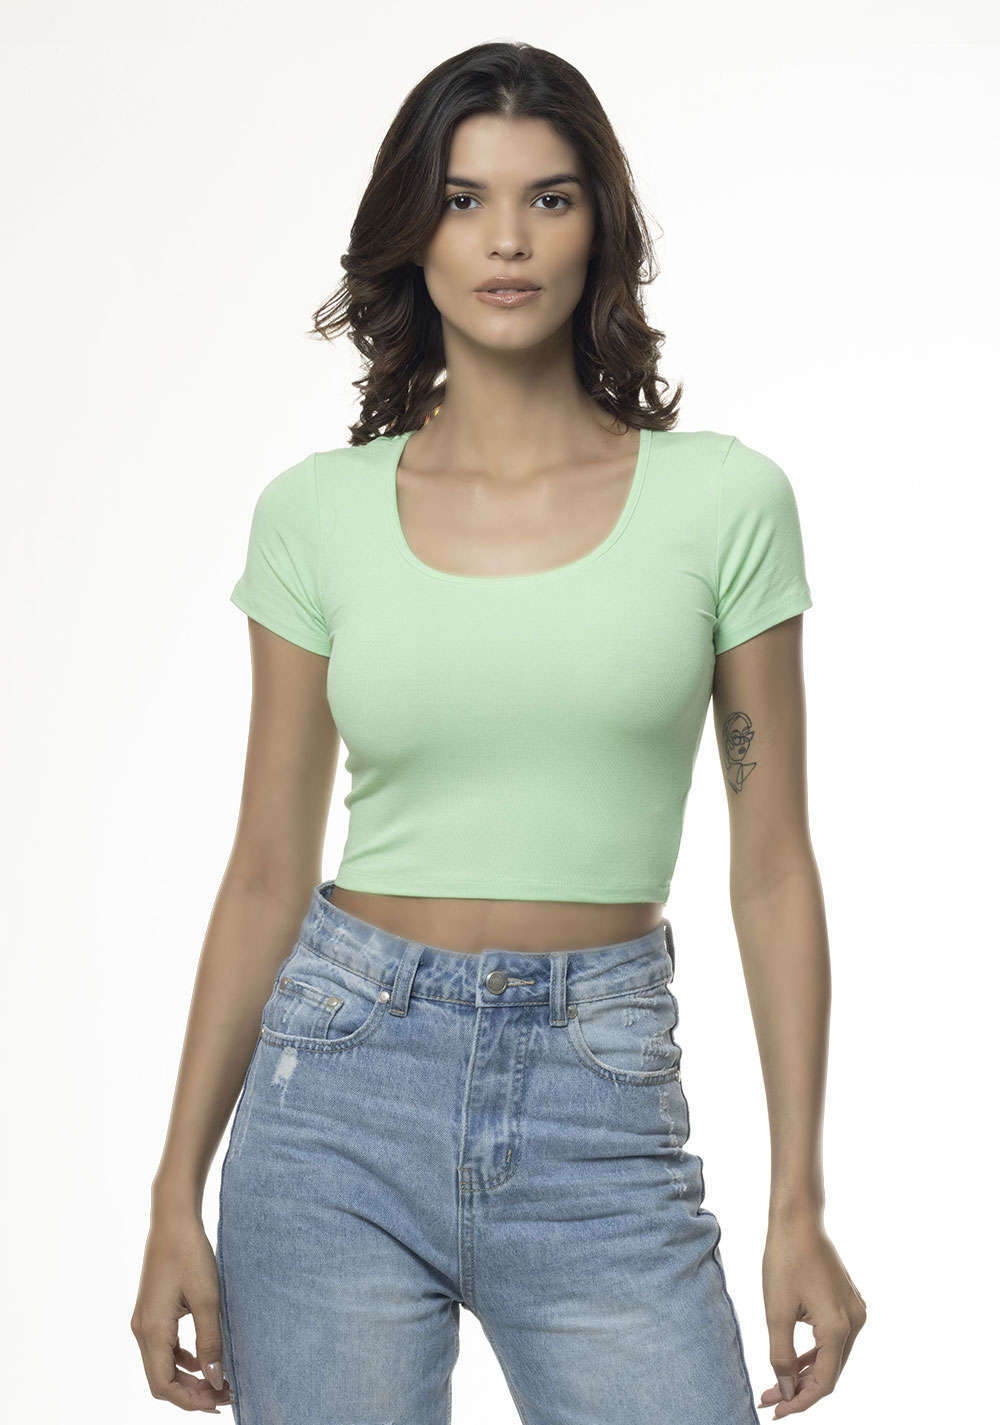 Bolivia 123 - Mujer Camisetas diseños únicos de marcas reconocidas. Tela  algodón, tallas s, m, l, color blanco. Precio: 90 bs. Envío a domicilio.